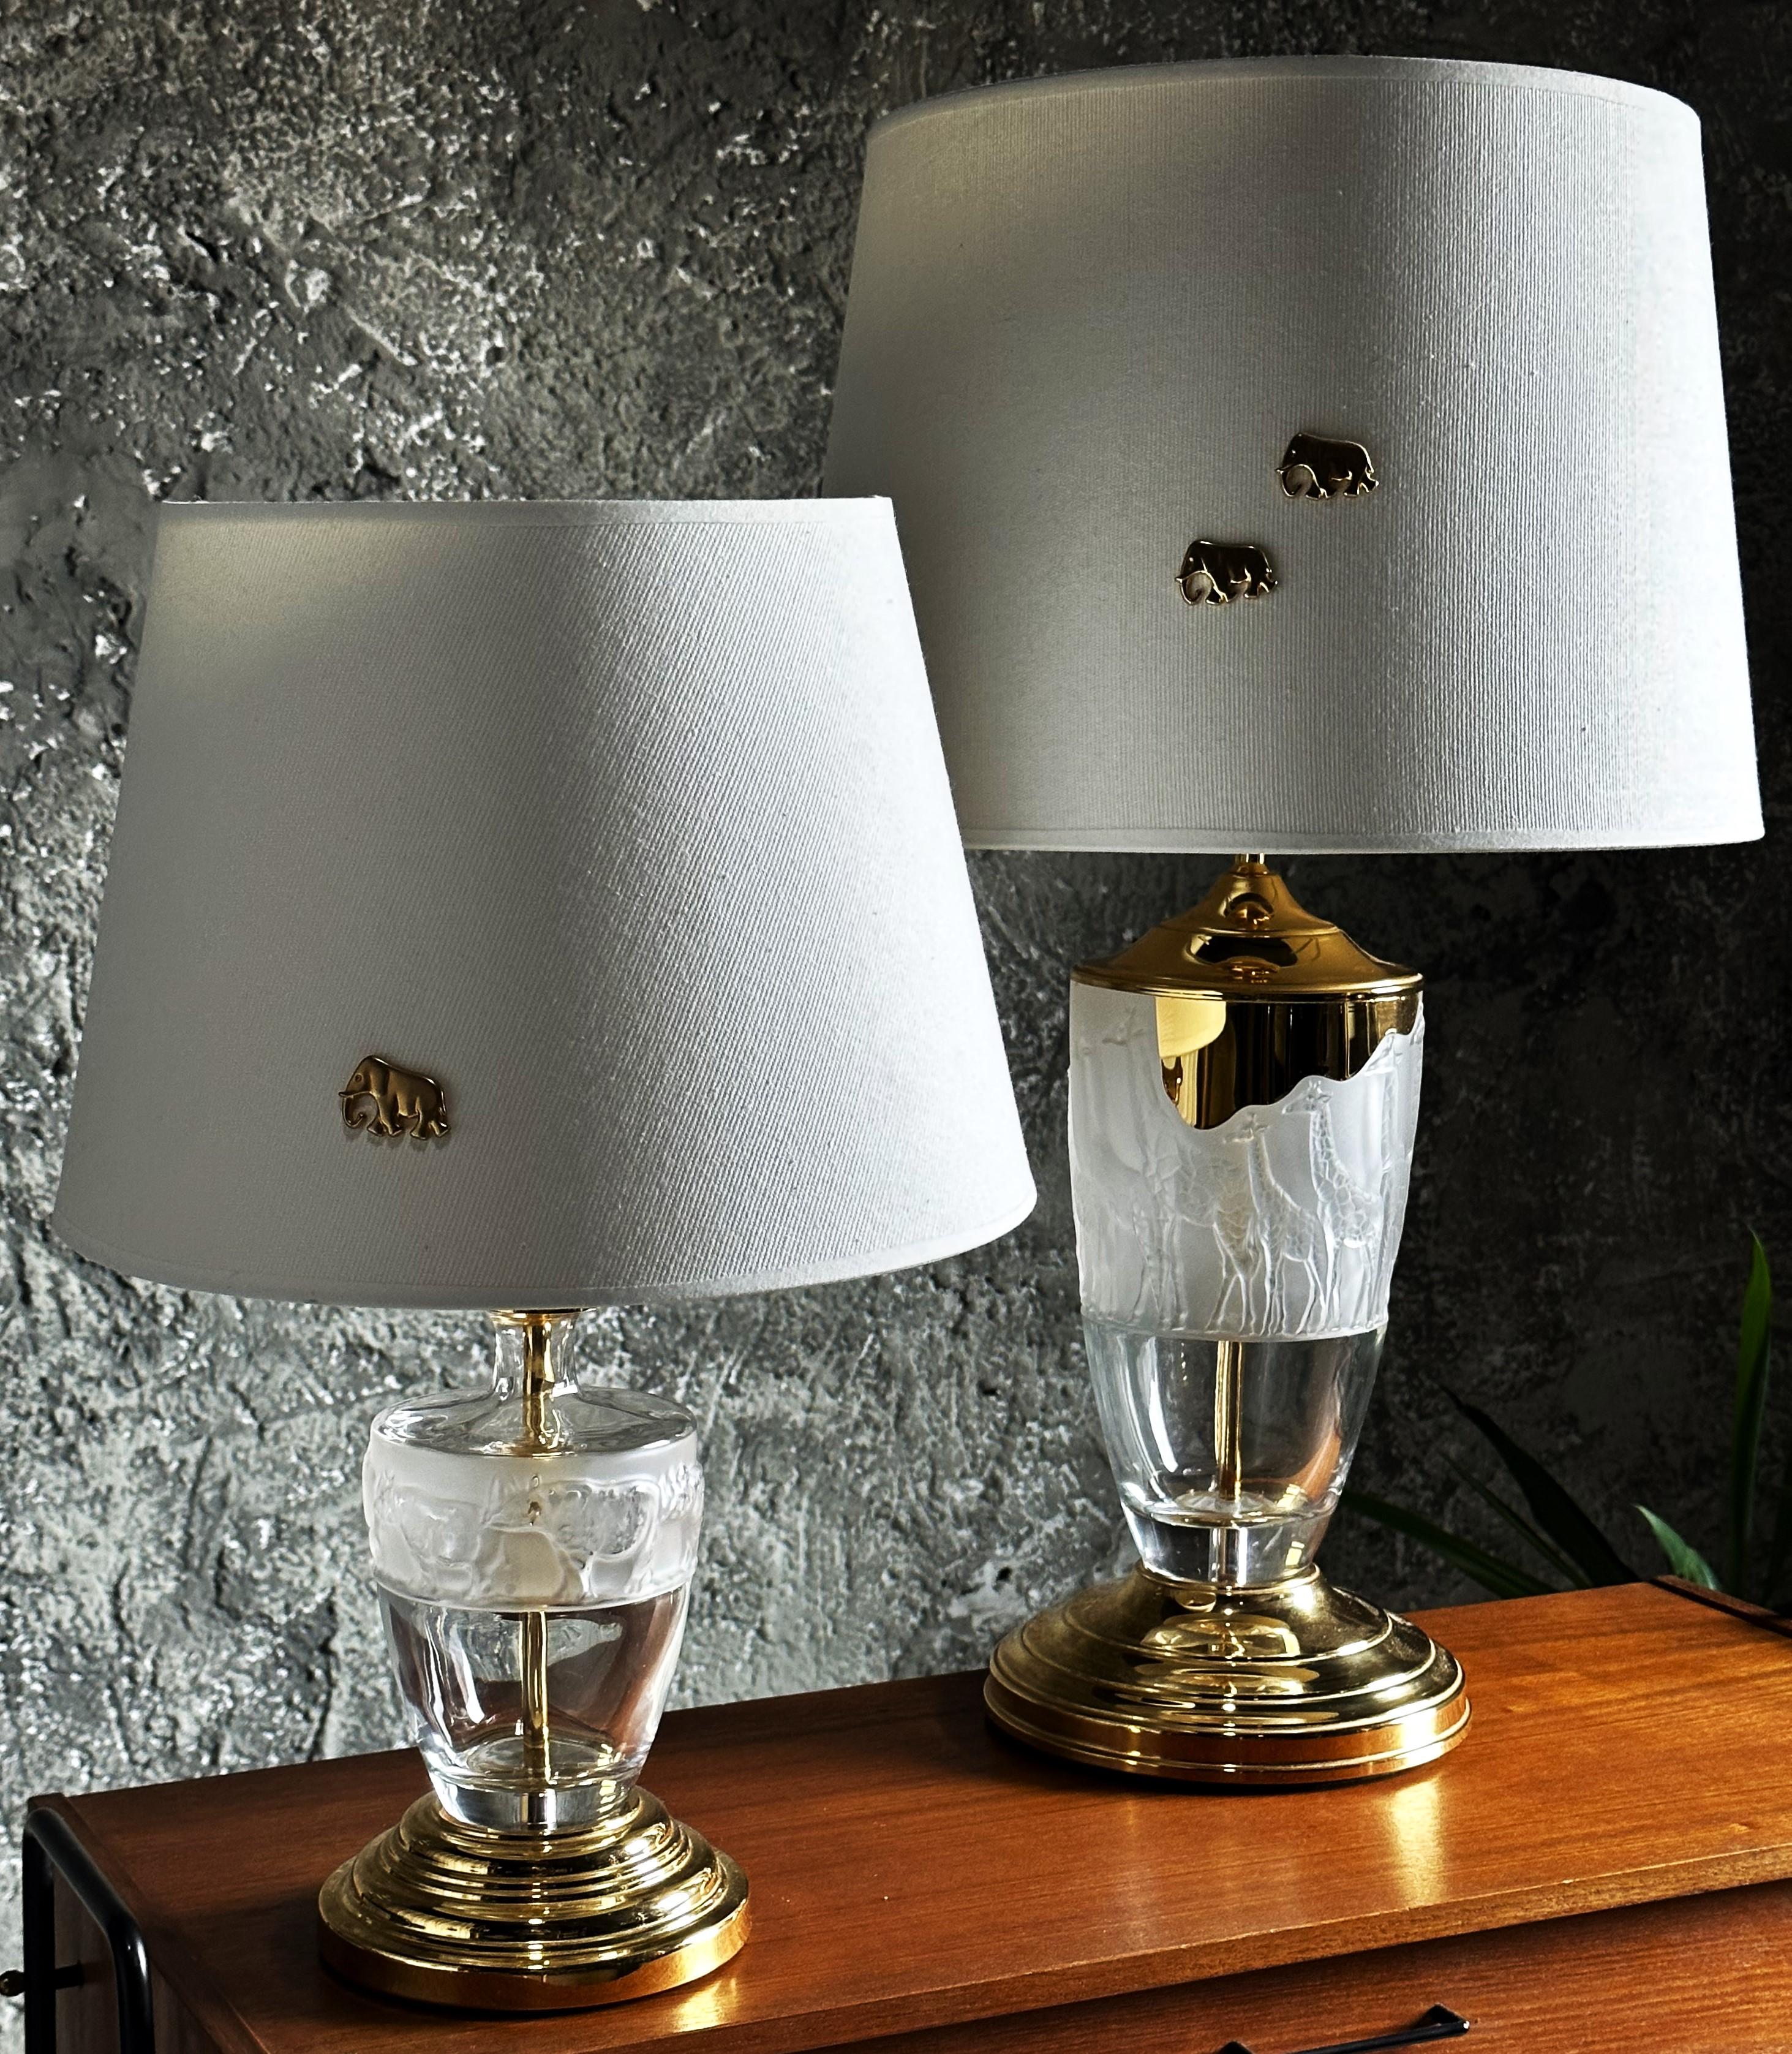 Pair of Midcentury Murano Table Lamps, Africa Design, Brass. Italy 1960s In Good Condition For Sale In Saarbruecken, DE